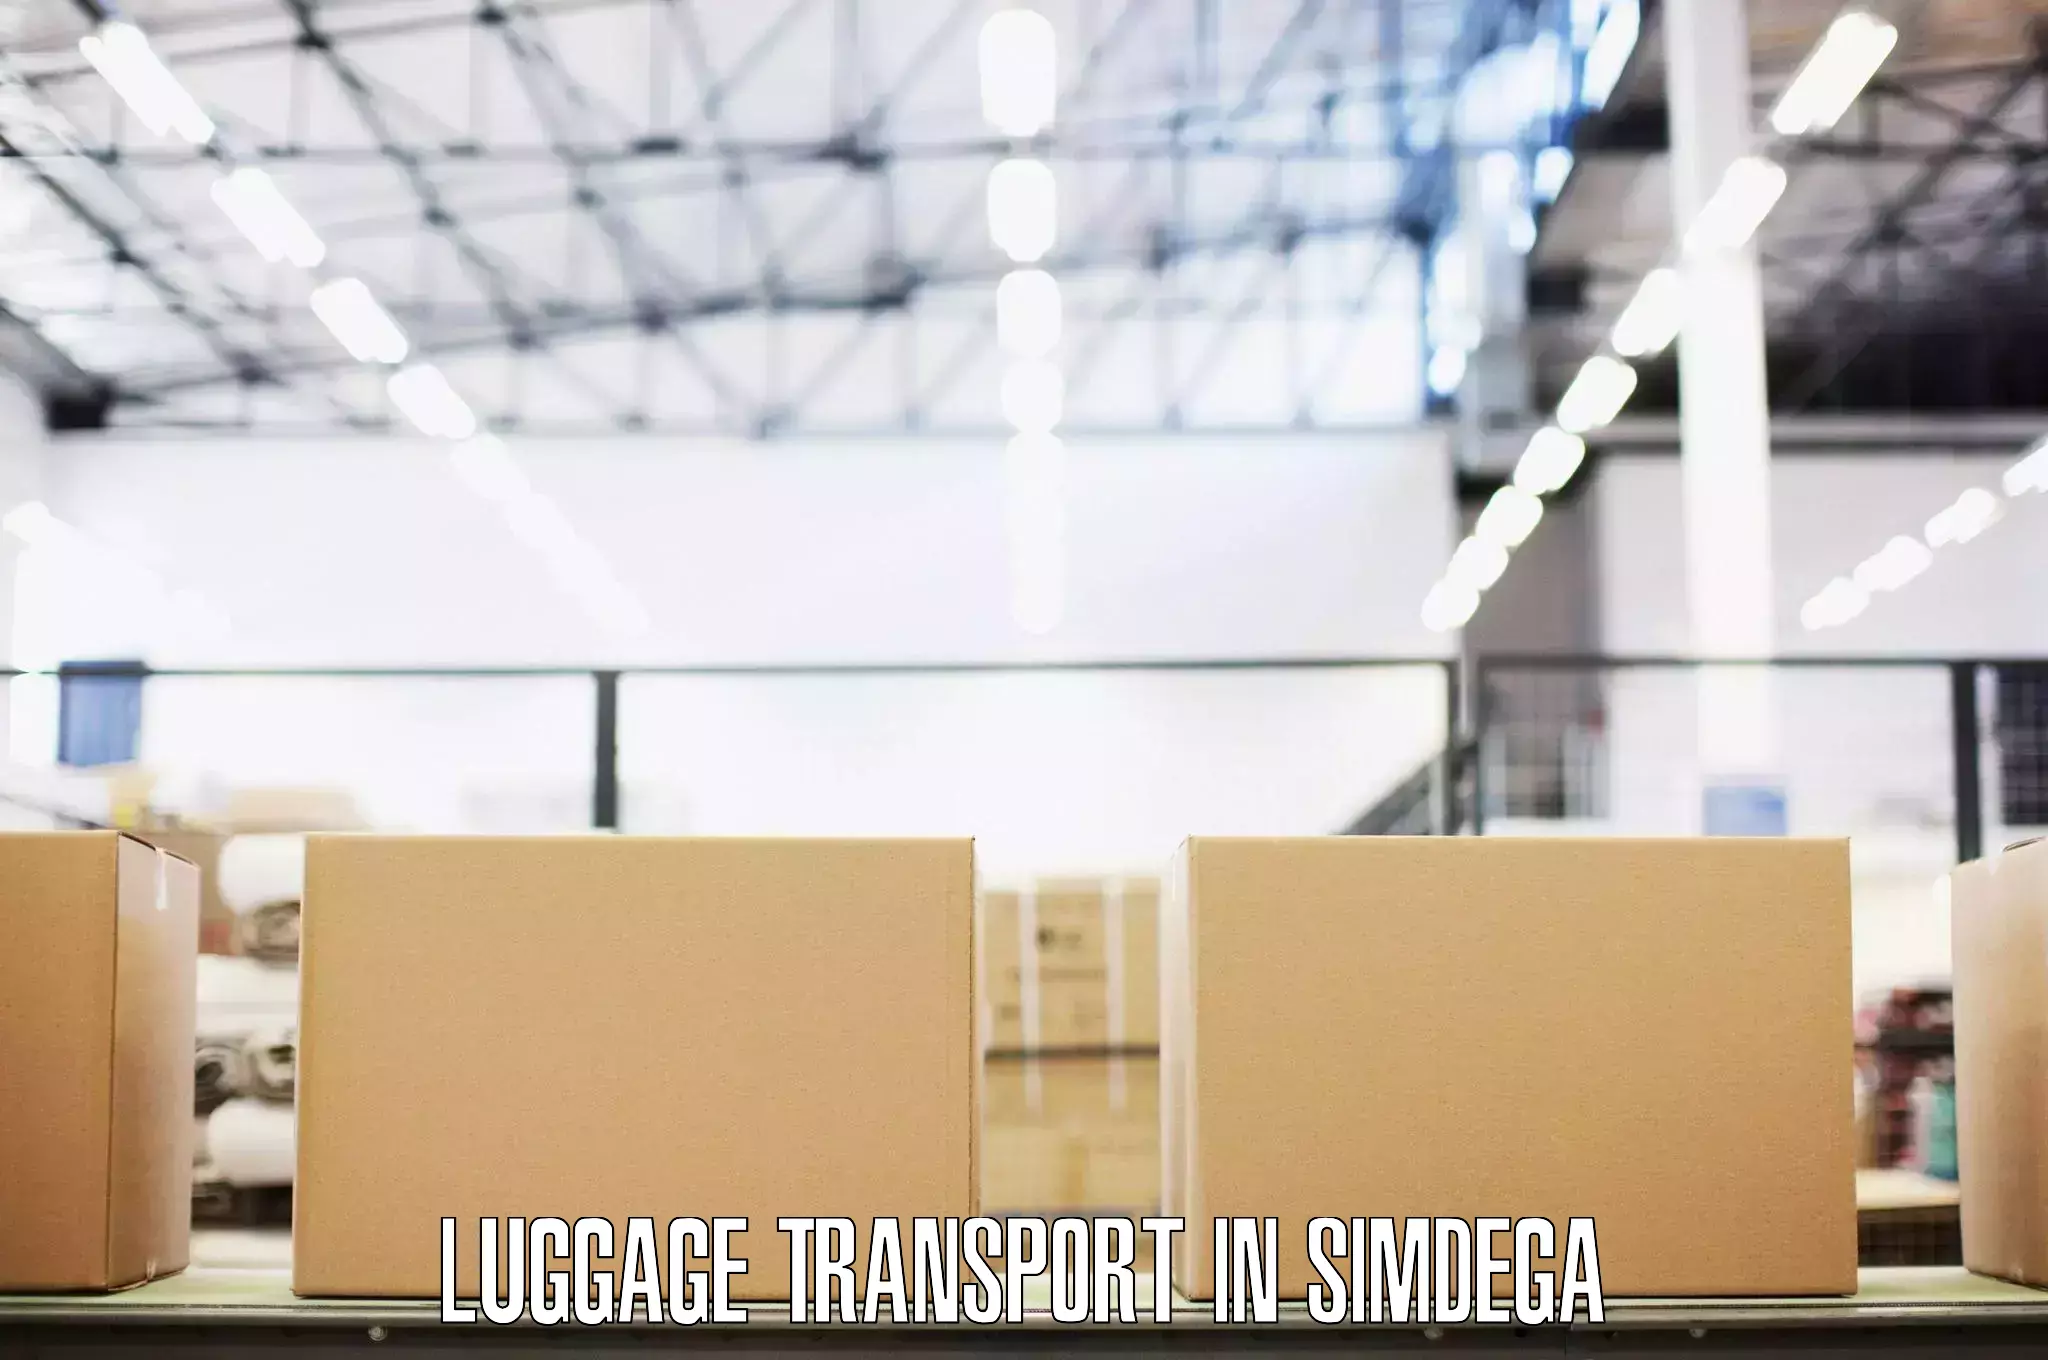 Luggage shipping discounts in Simdega